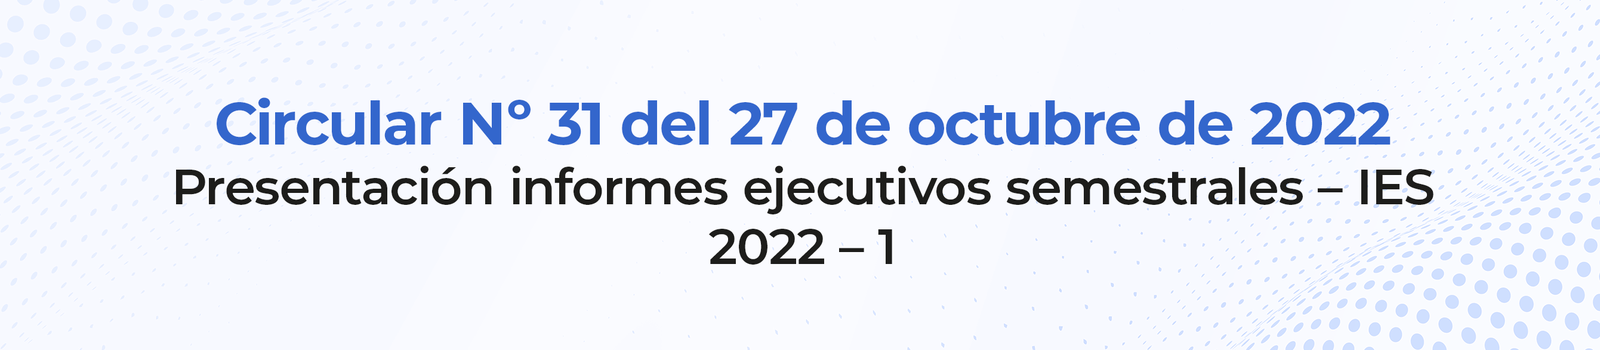 20221028-circular